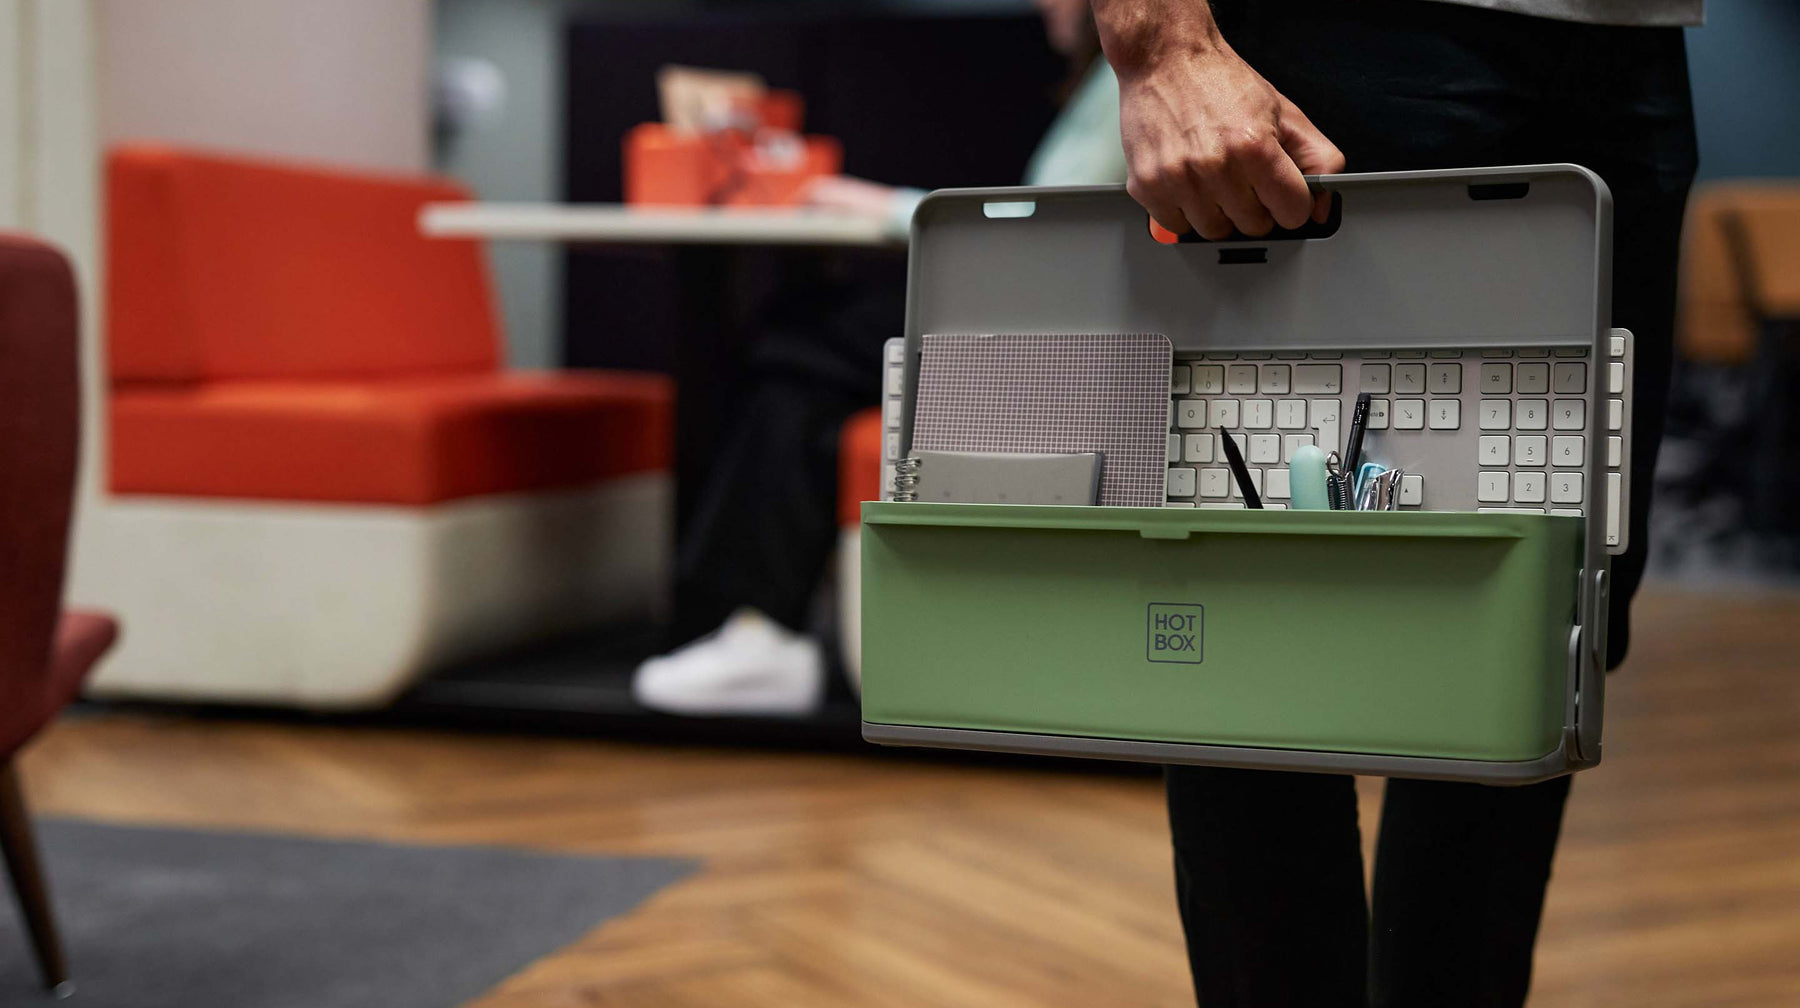 Zwiększ możliwości swojego zespołu dzięki Hotbox - Dzisiejsi pracownicy cenią sobie elastyczność, dzięki Hotbox możesz zbudować solidną, hybrydową siłę roboczą, która szuka korzyści płynących z nowoczesnych biur i pracy w domu. Daj swoim pracownikom najlepsze narzędzia do pracy.